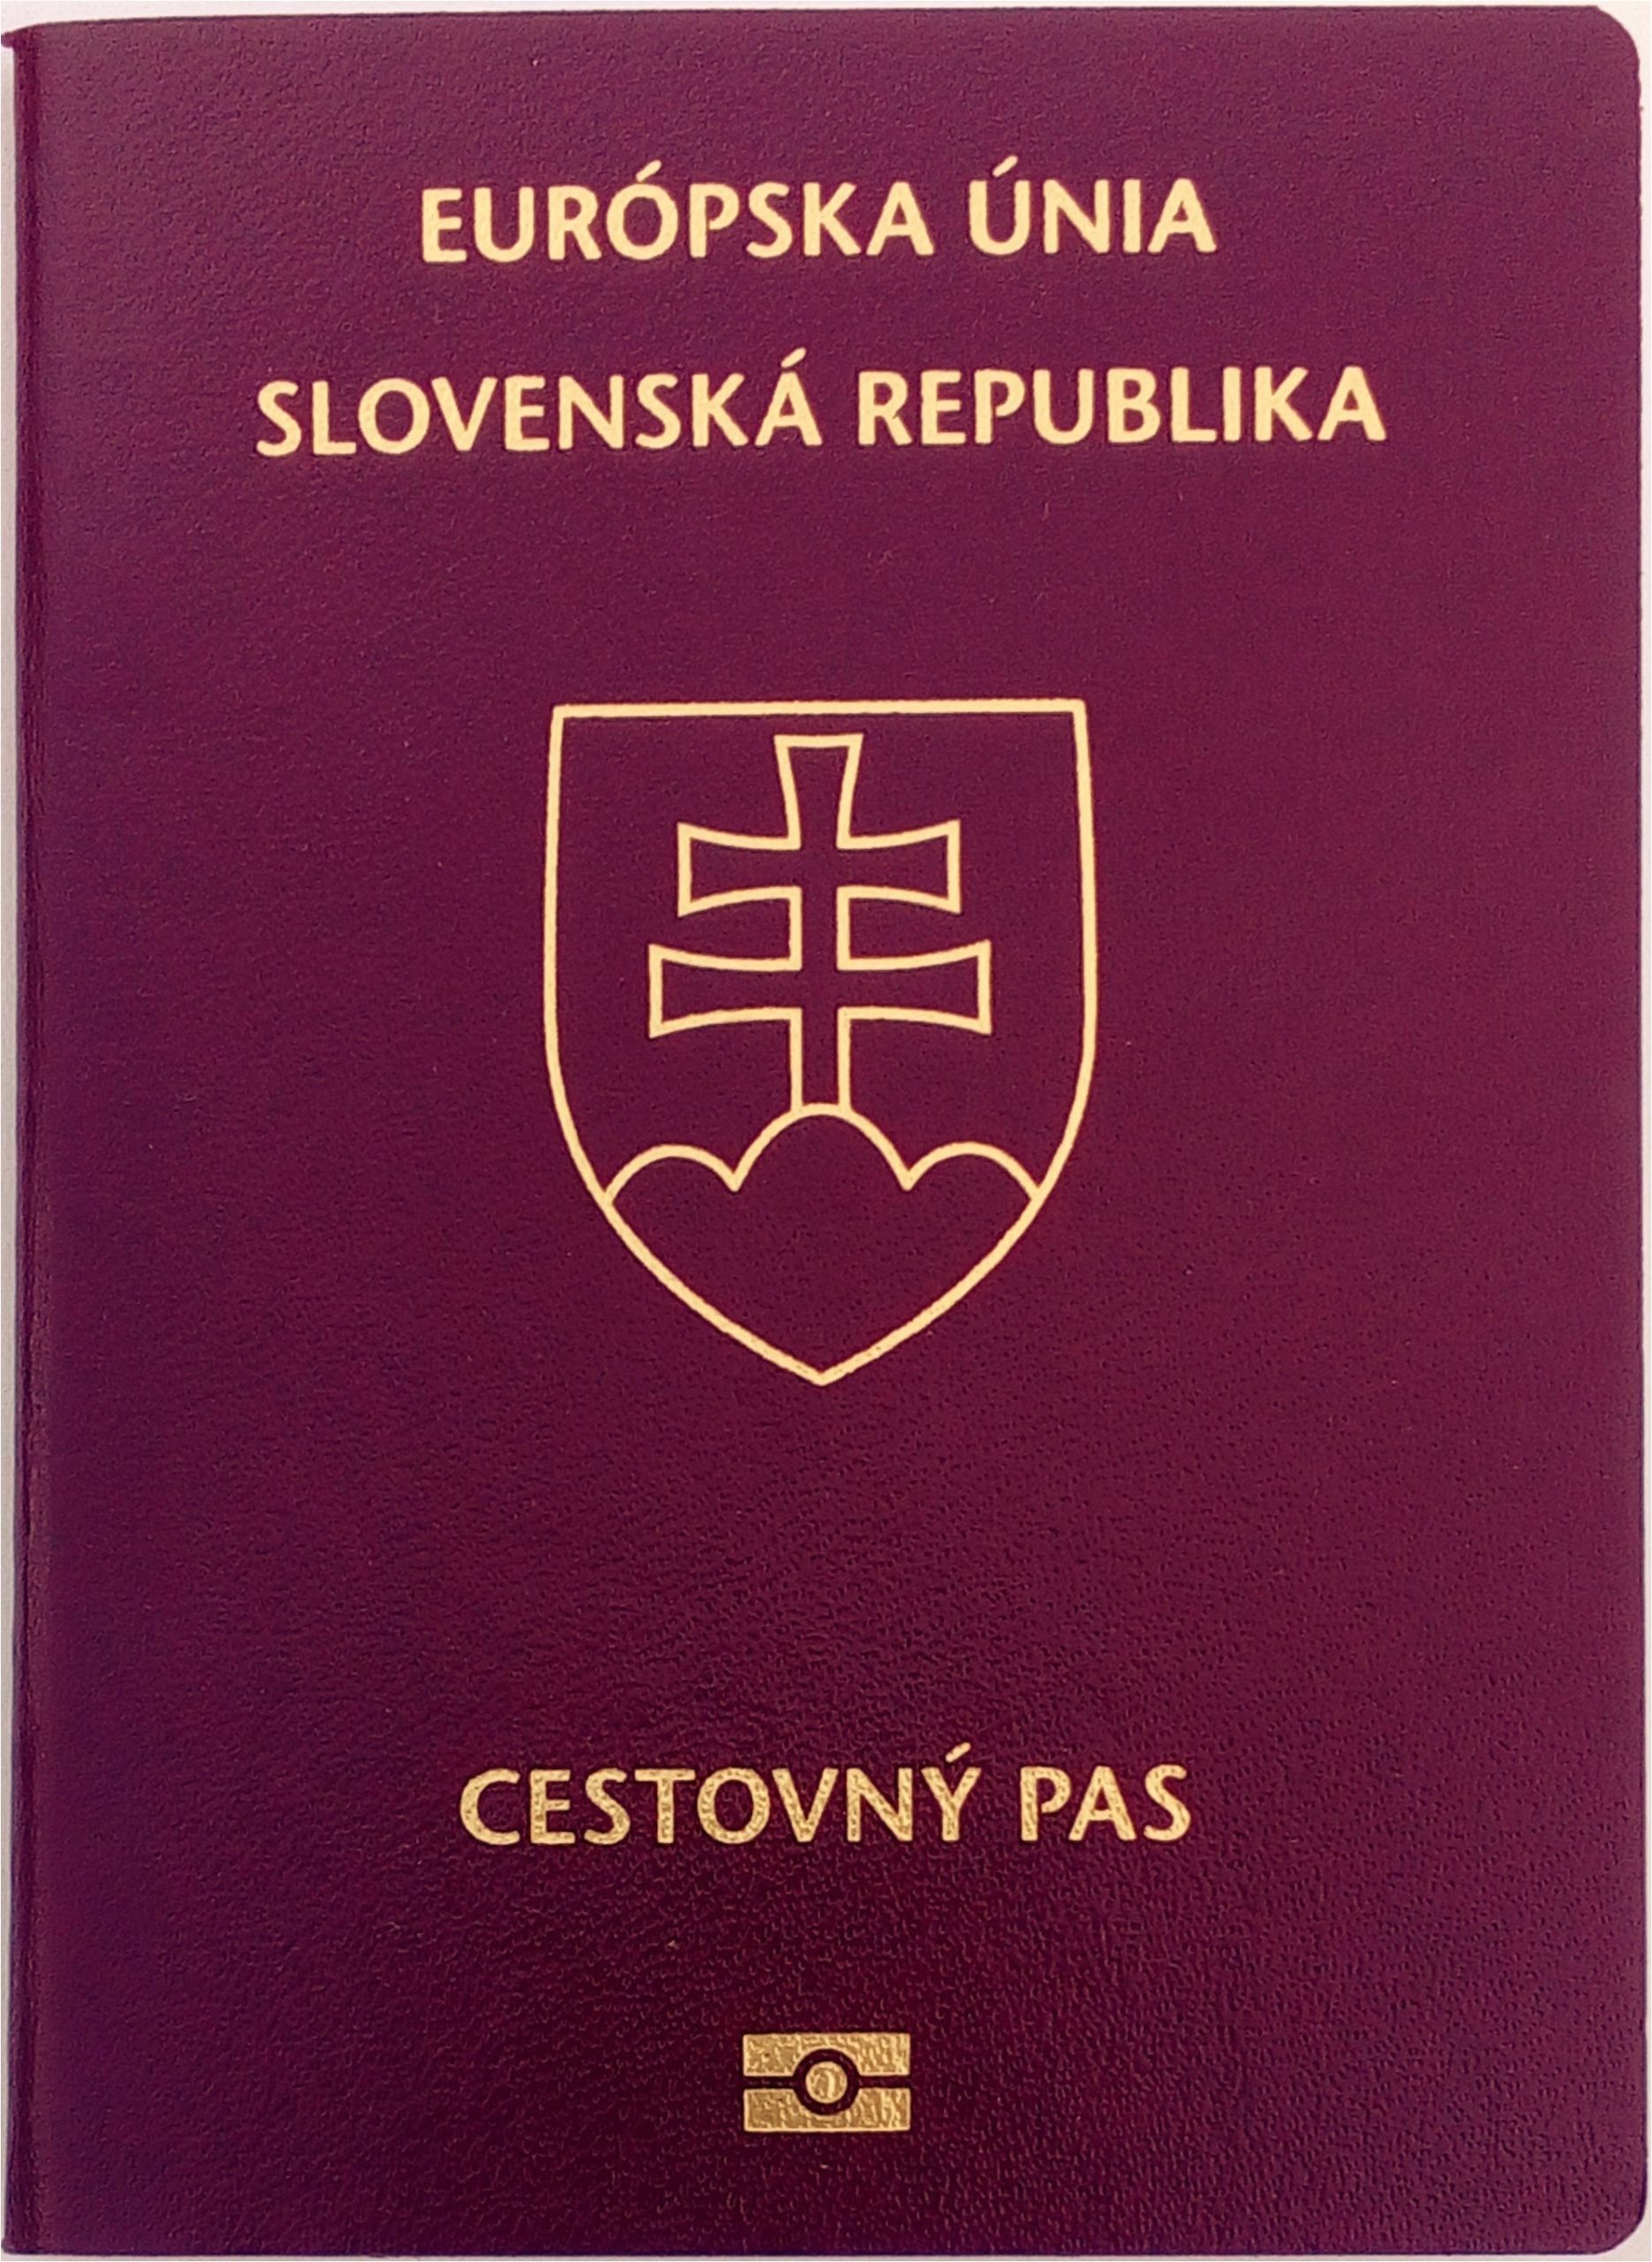 slovak passport biometric jpg